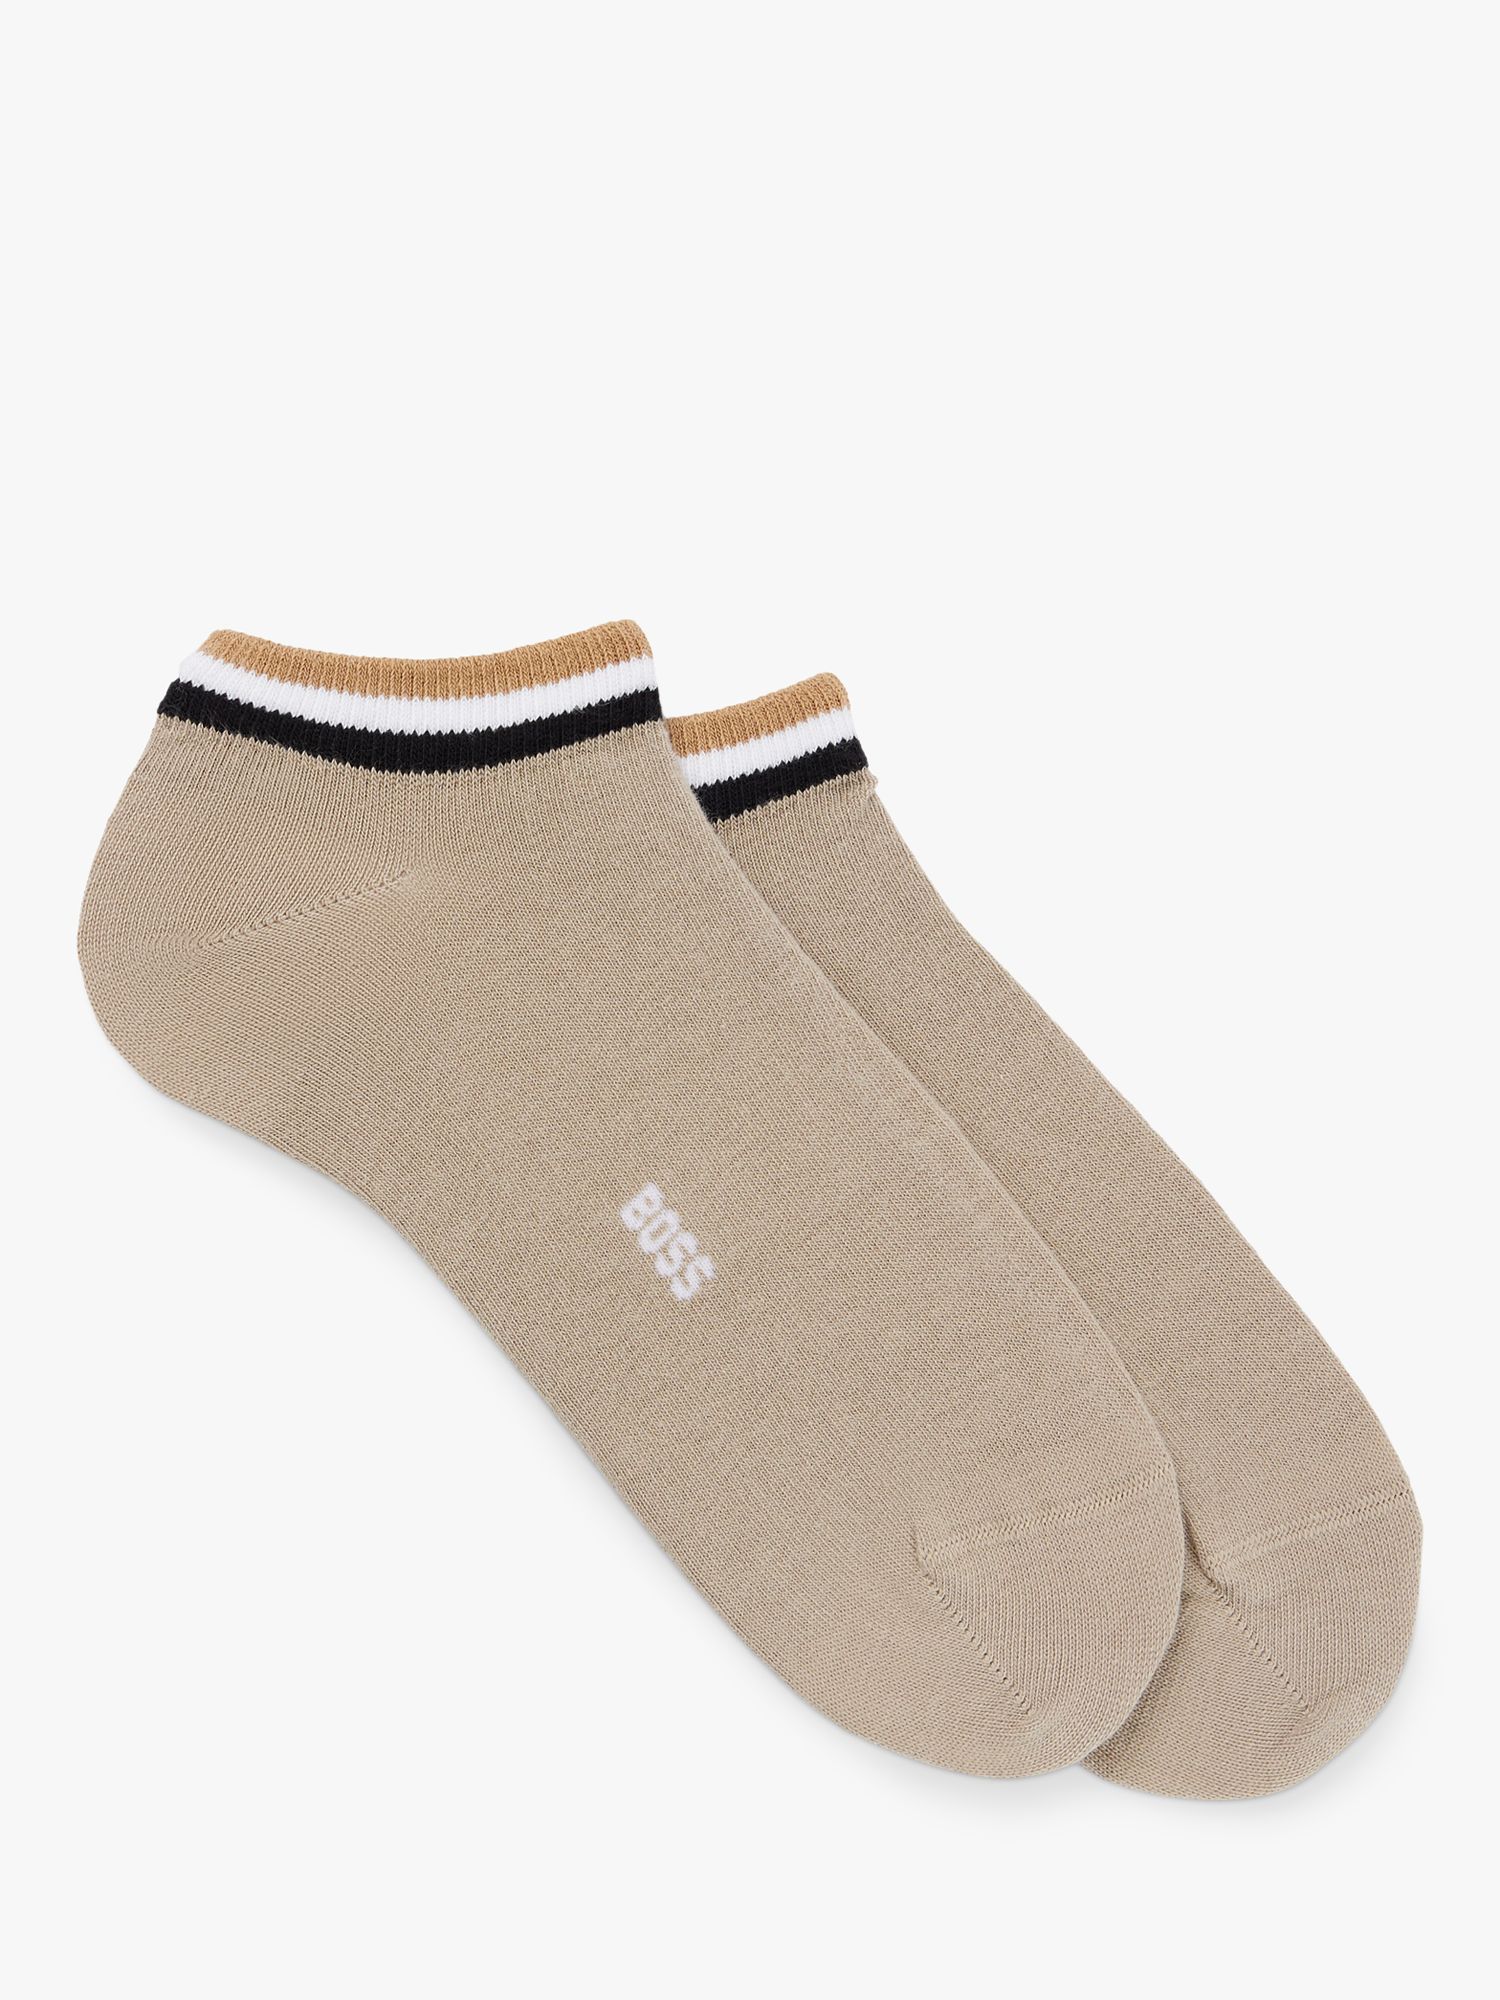 HUGO BOSS BOSS Iconic Stripe Design Ankle Socks, Pack of 2, Dark Beige, S-M